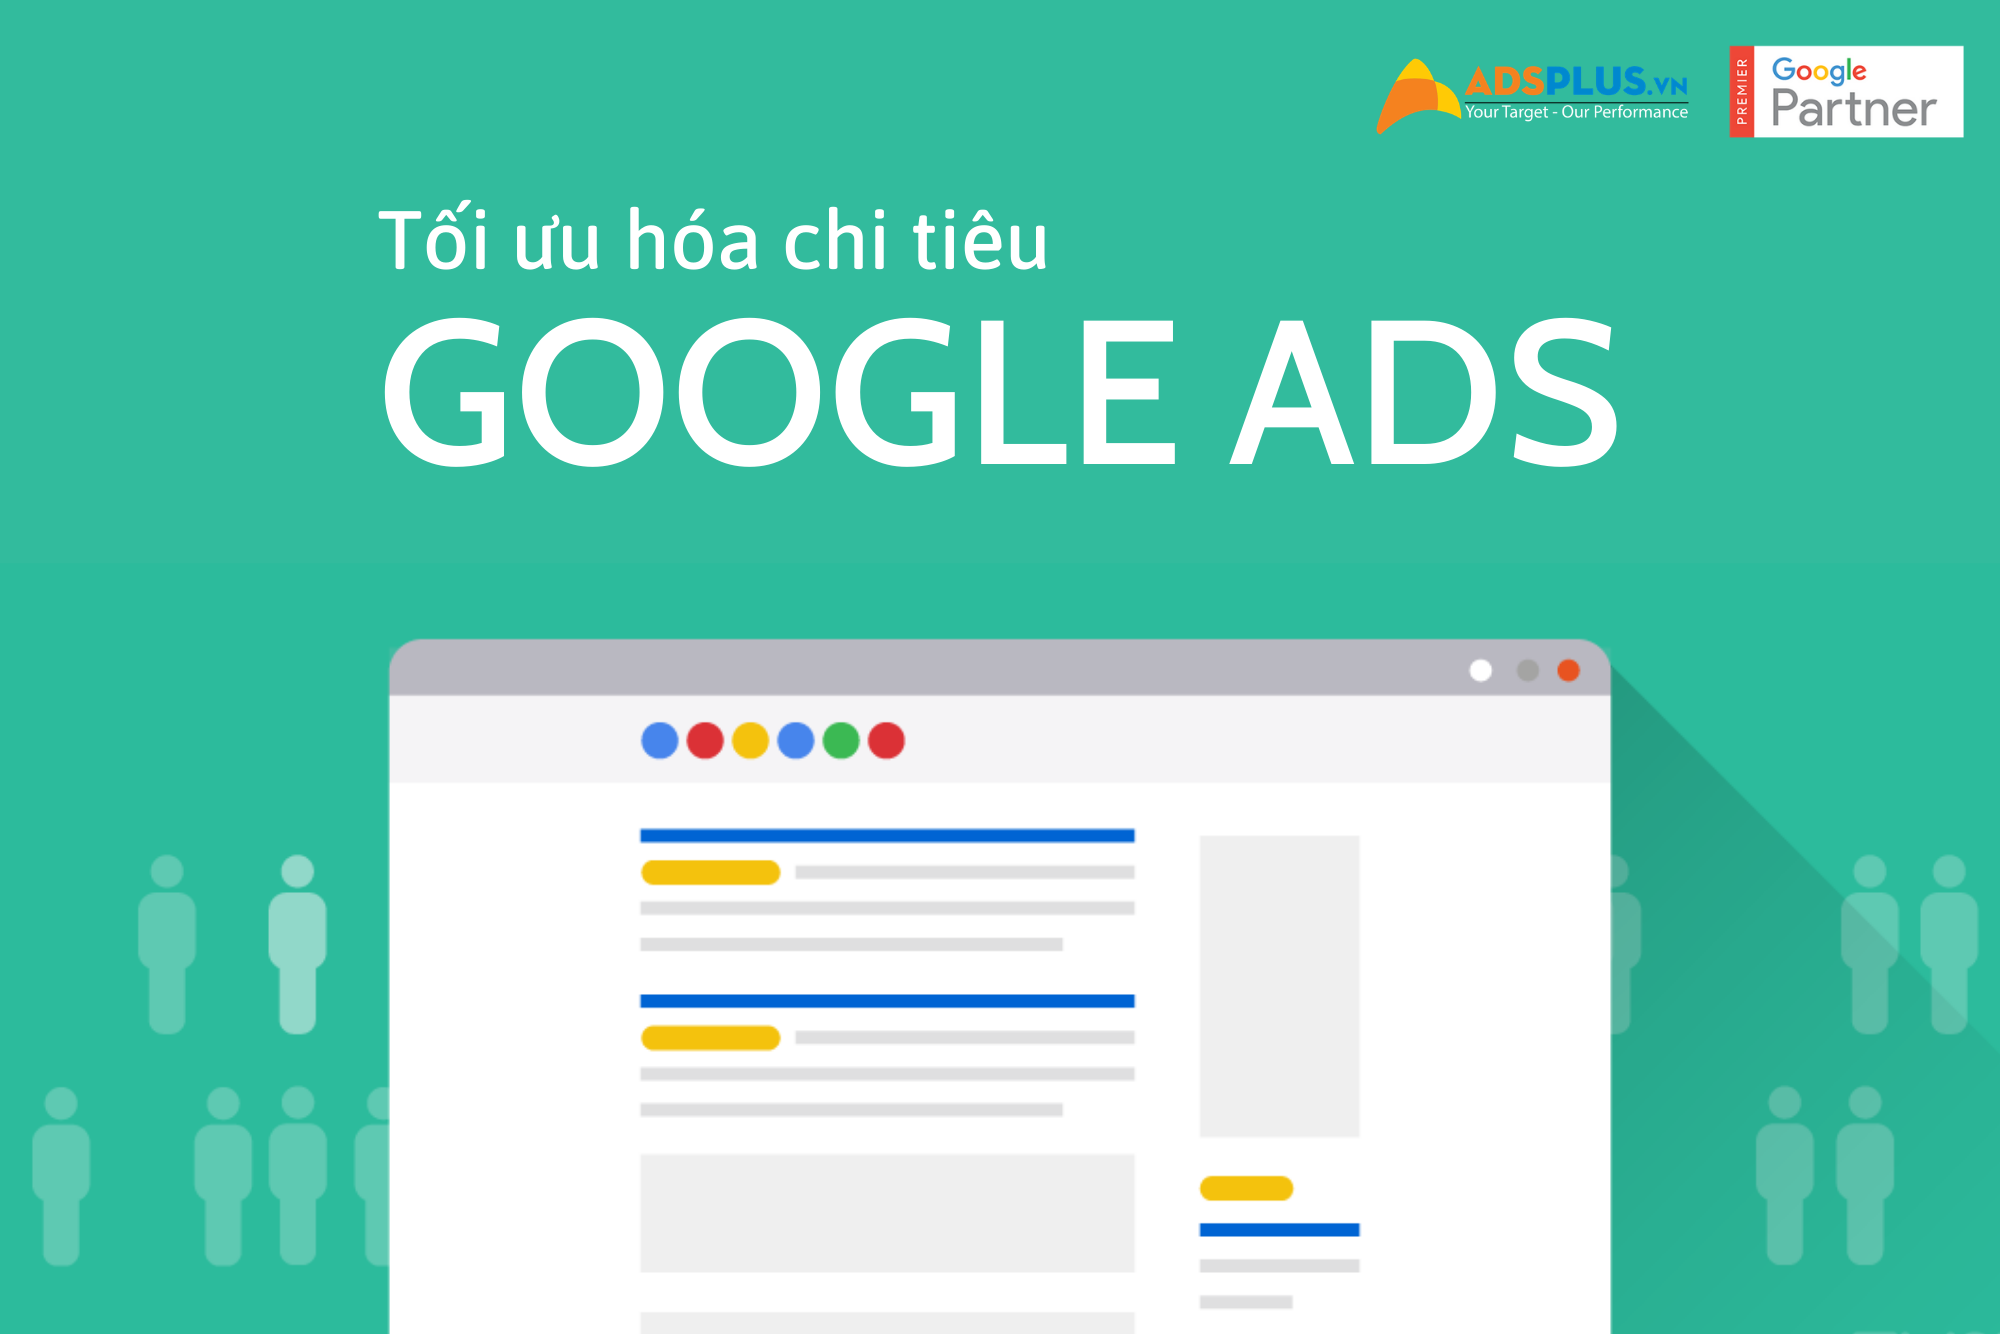 tối ưu hóa chi tiêu quảng cáo Google Ads